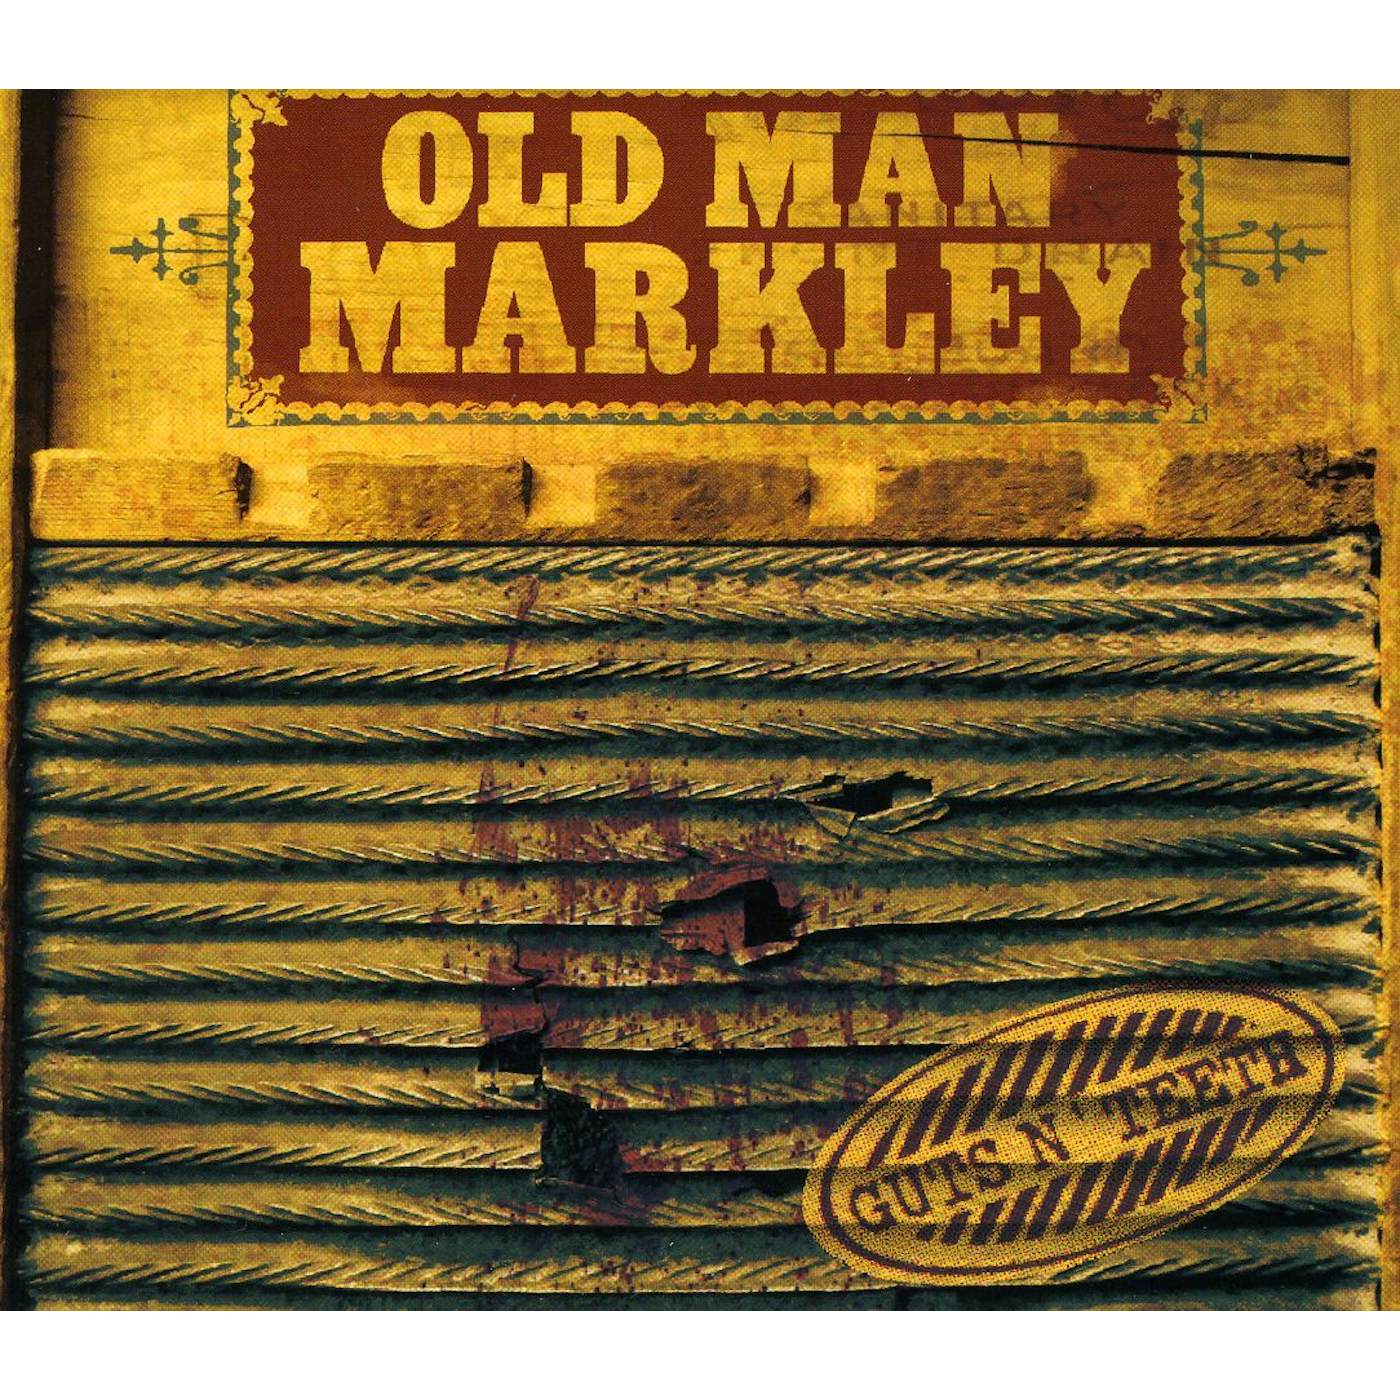 Old Man Markley GUTS N TEETH CD